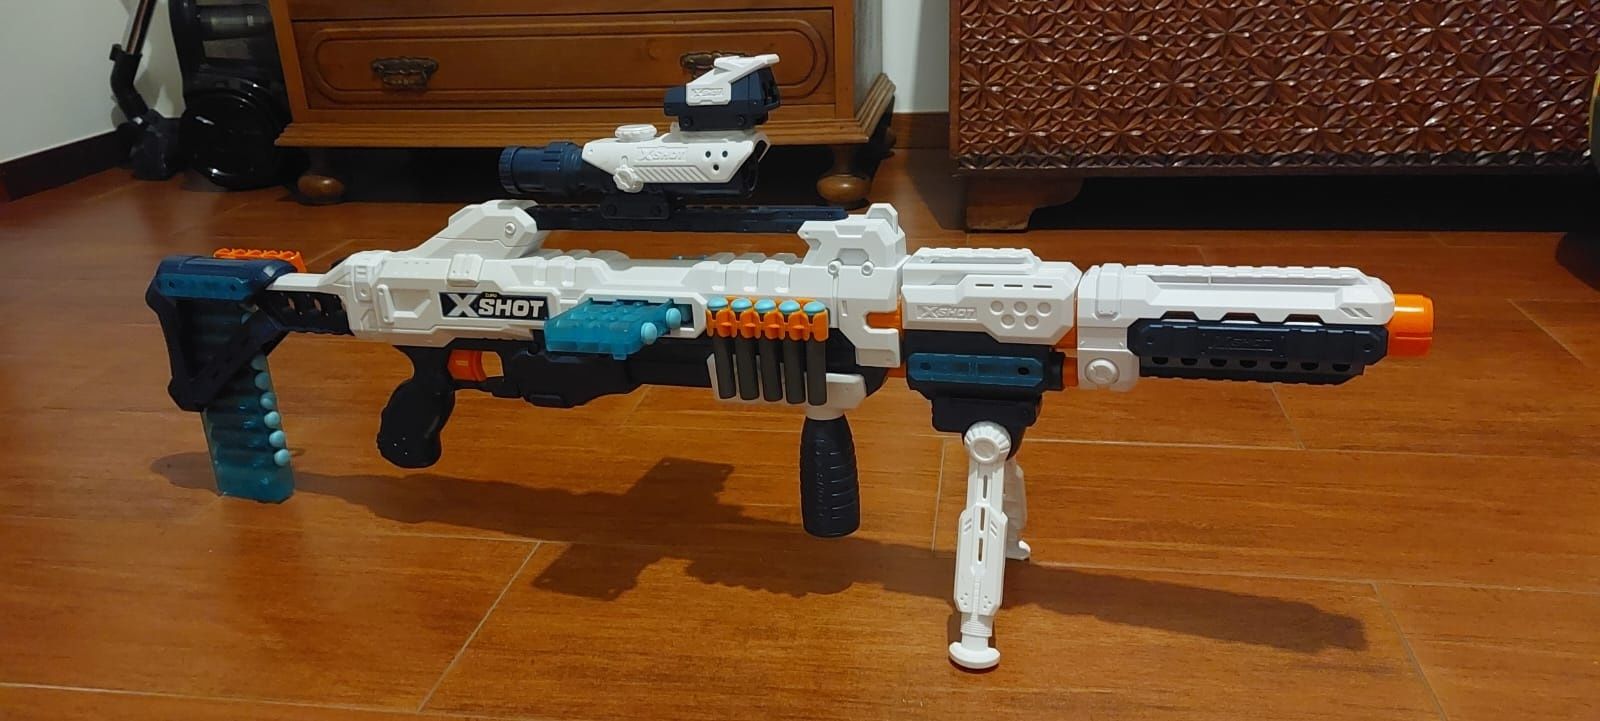 Zuru X-Shot sniper